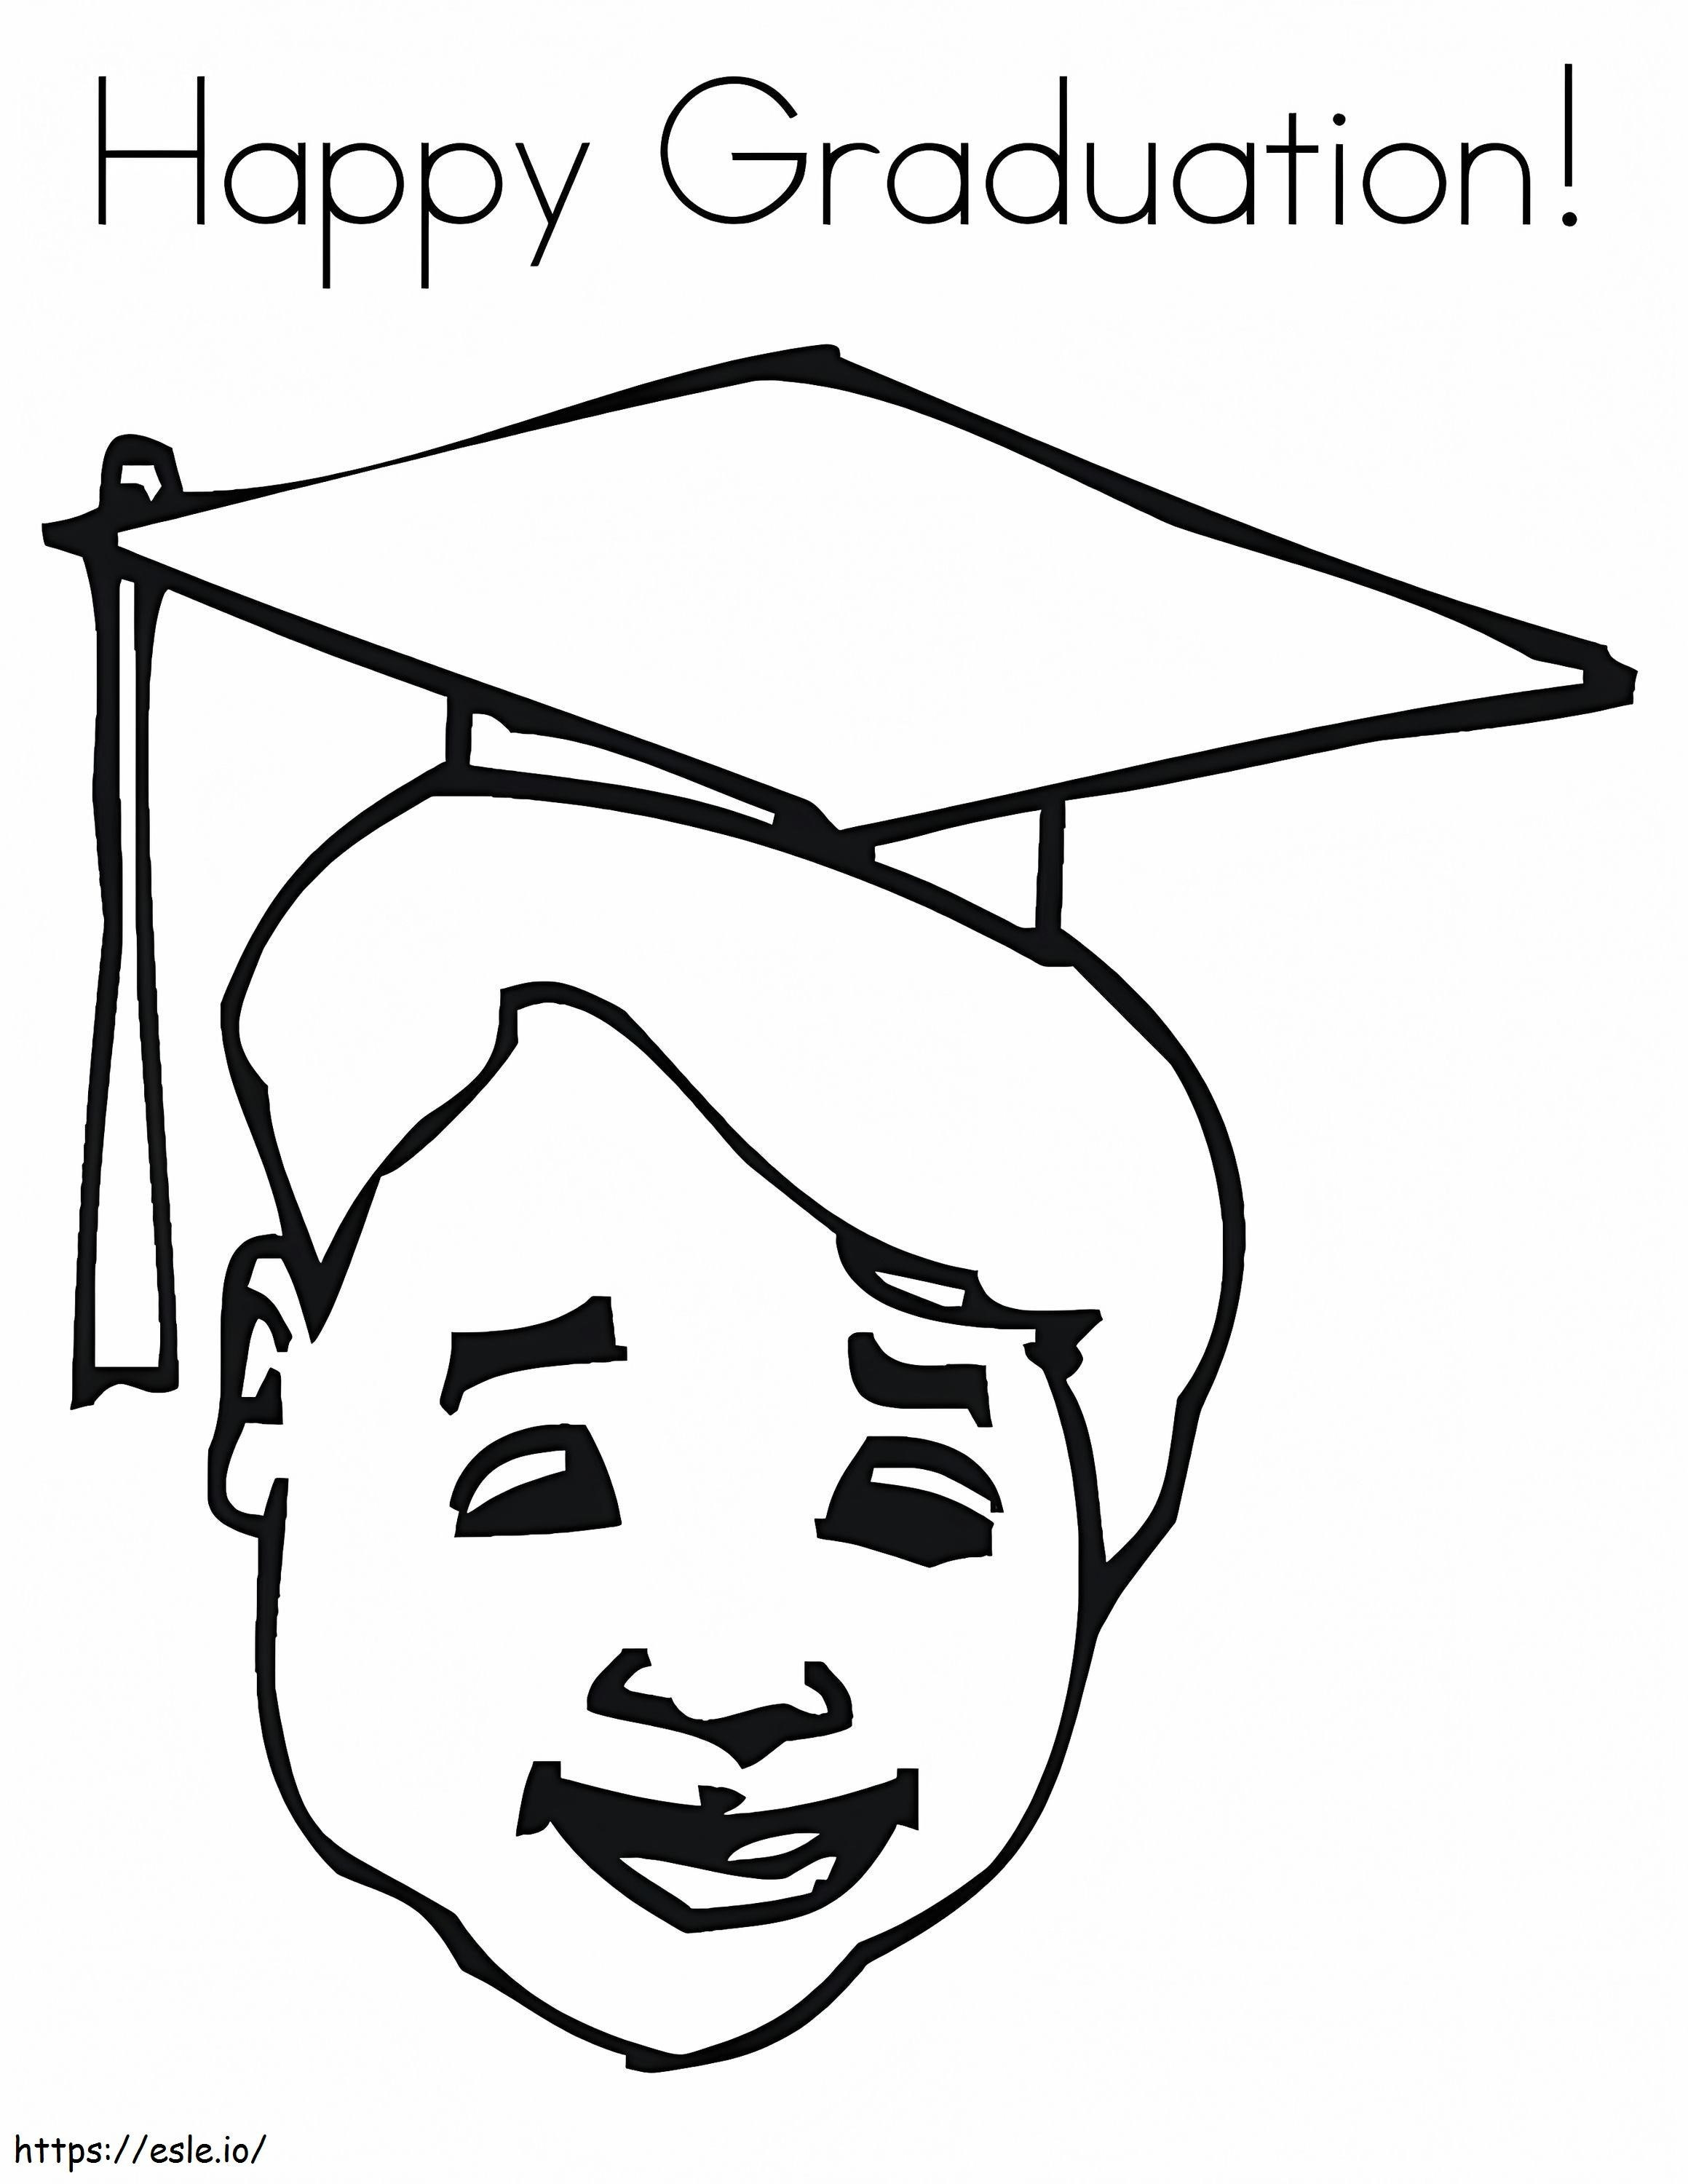 Happy Graduation coloring page